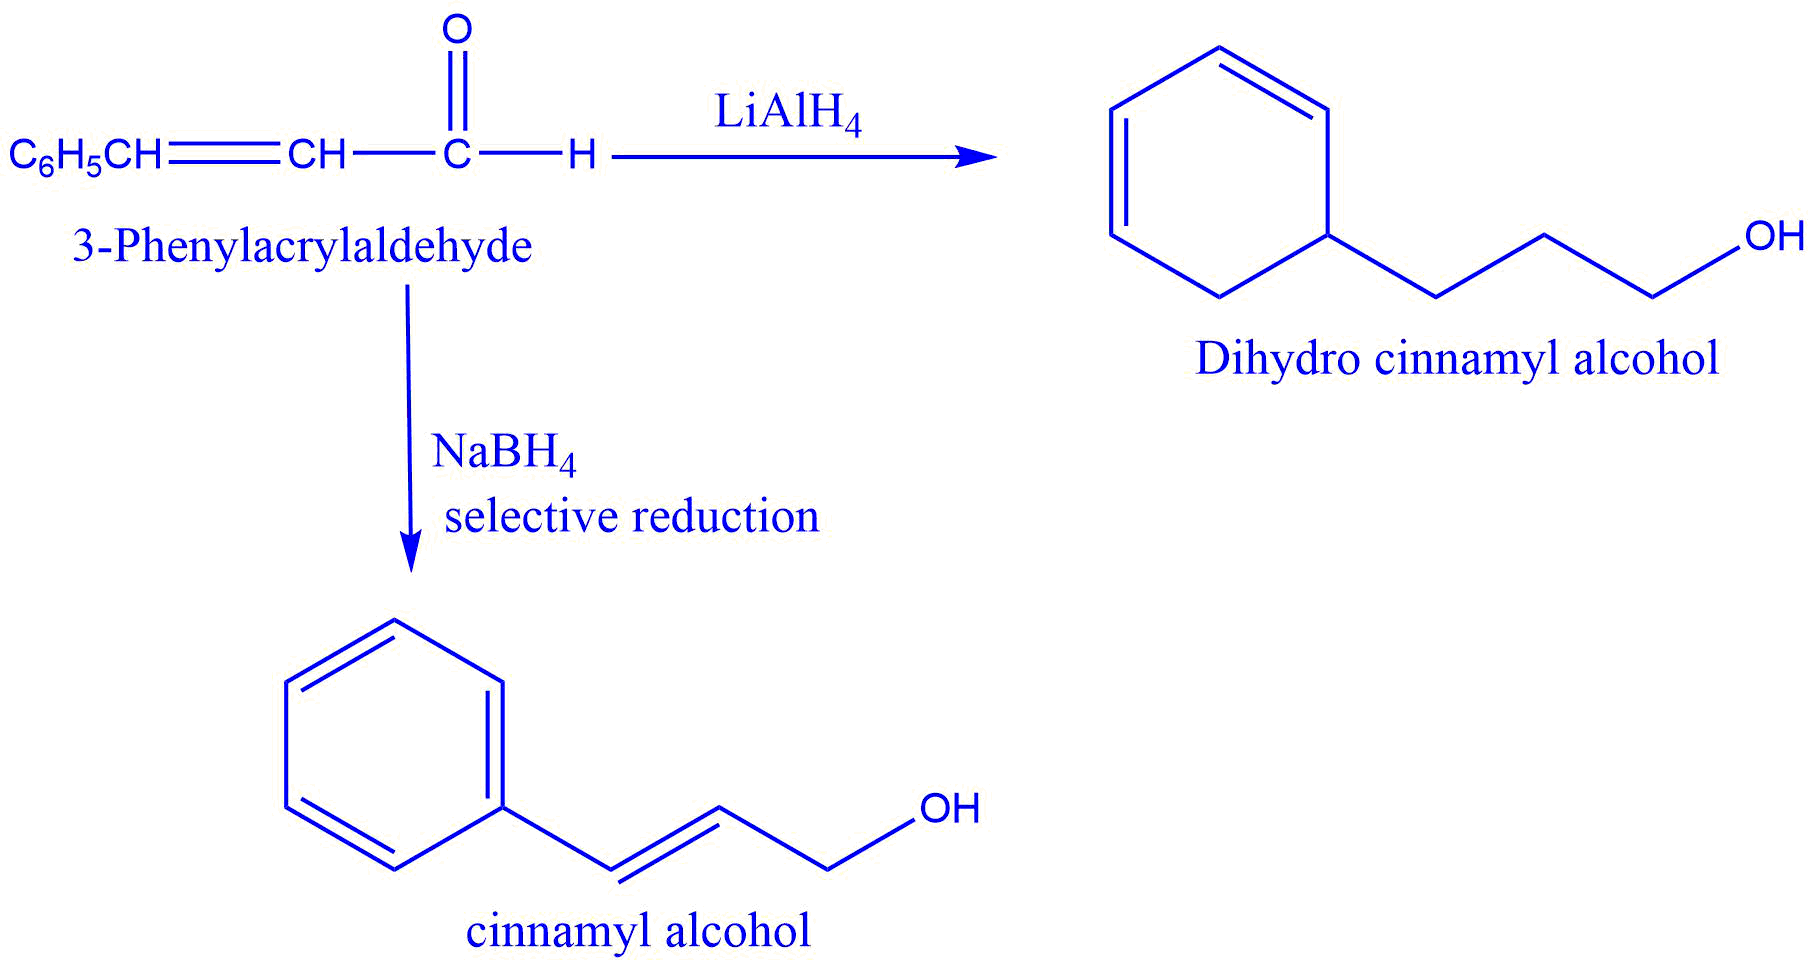 Reduction of 3-Phenylacrylaldehyde